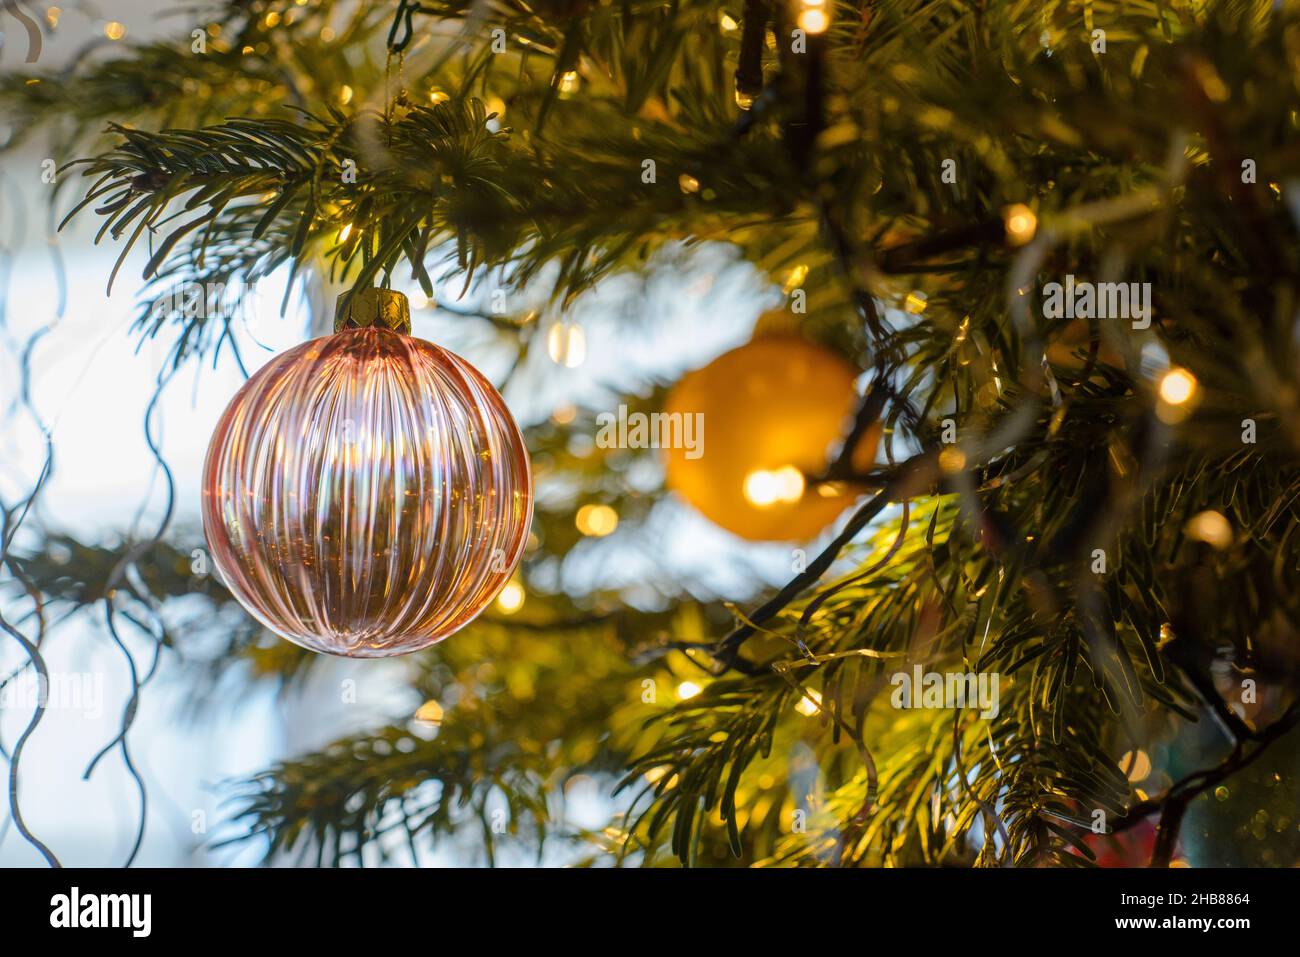 décorations et boules de noël sur un sapin pendant les fêtes de fin d'année. Christmas decorations and baubles on a tree during the festive season. Stock Photo